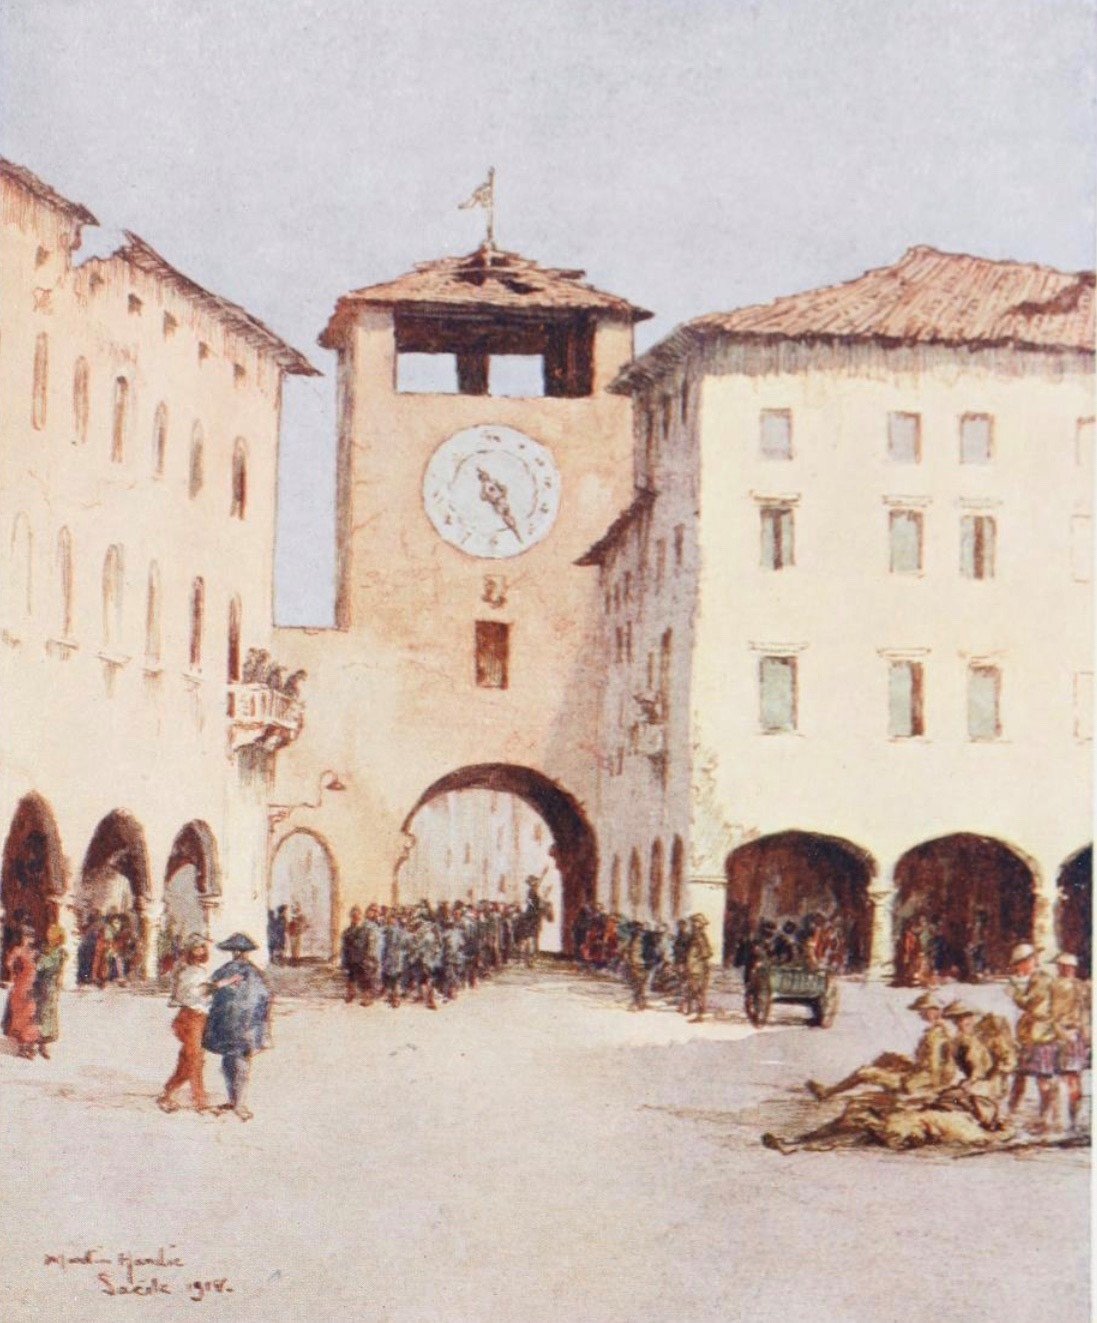 The Piazza Sacile